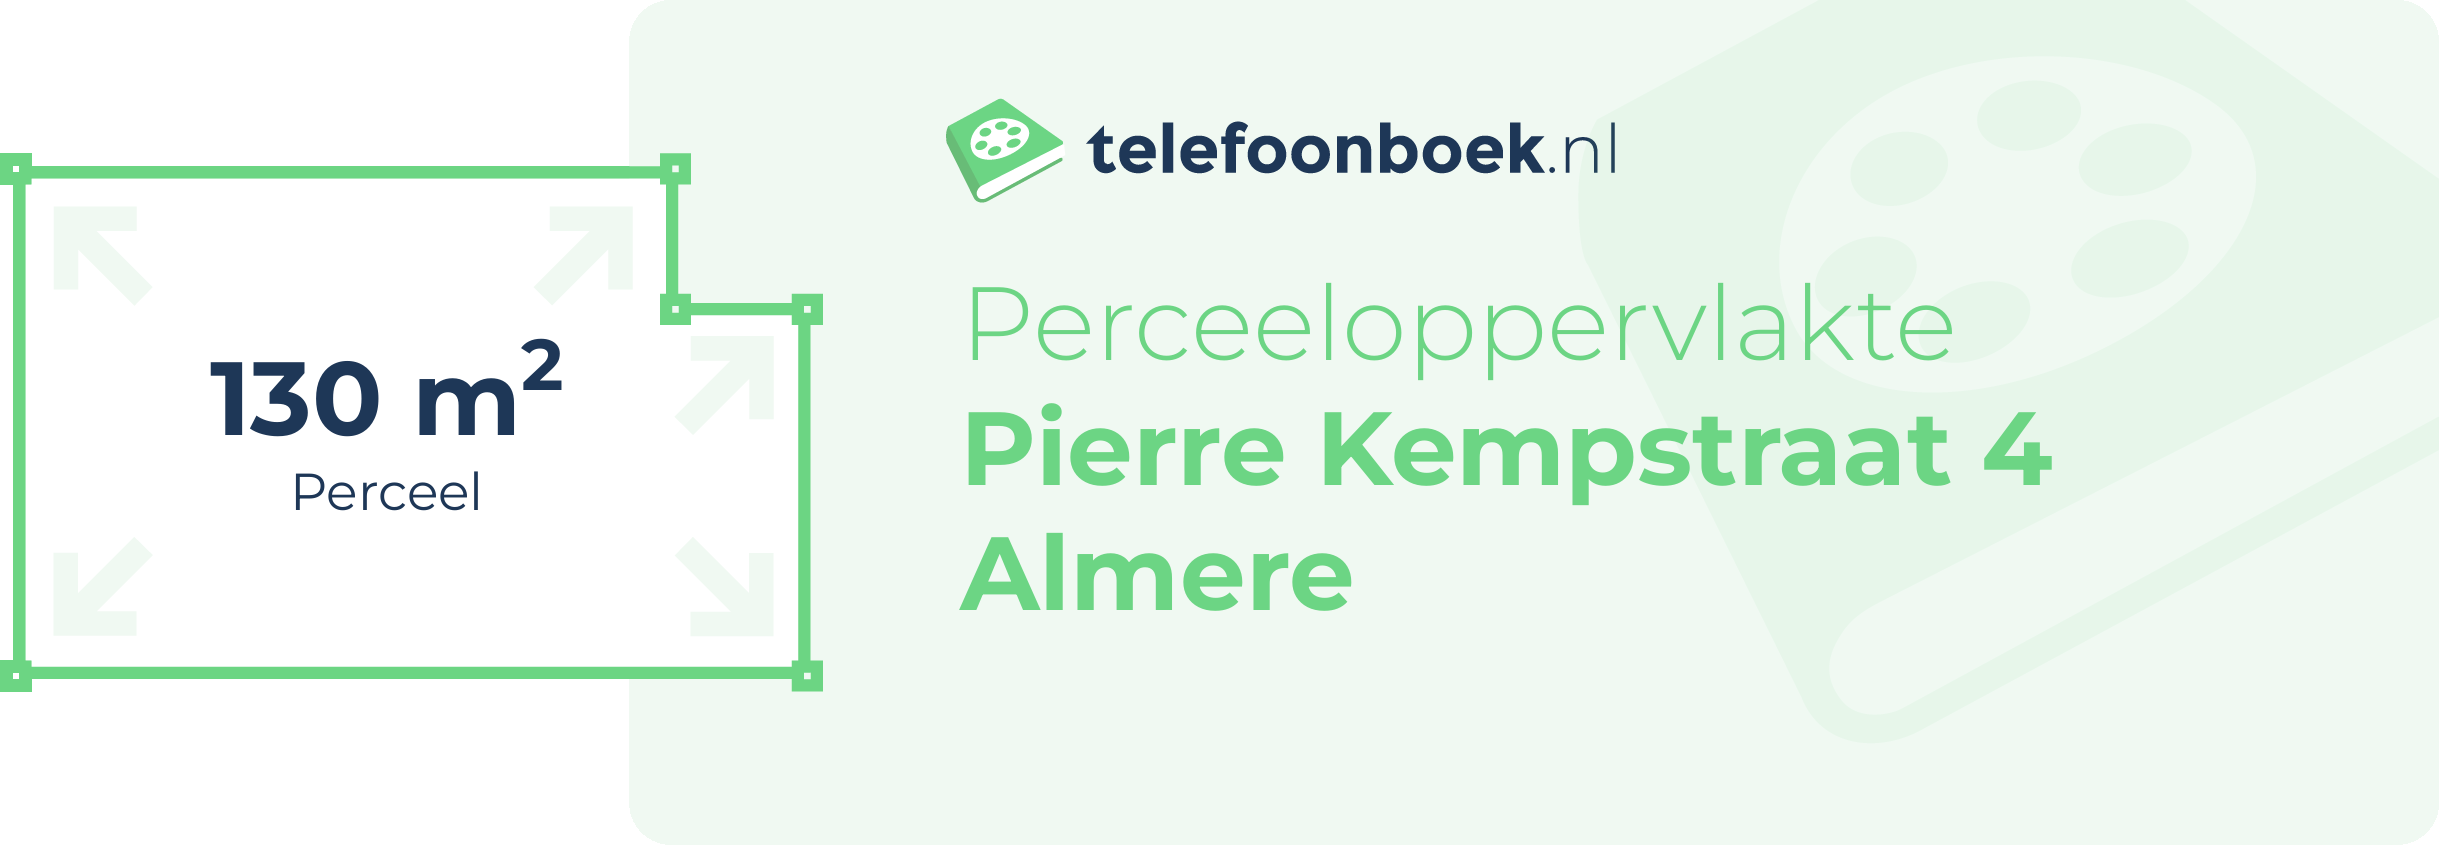 Perceeloppervlakte Pierre Kempstraat 4 Almere